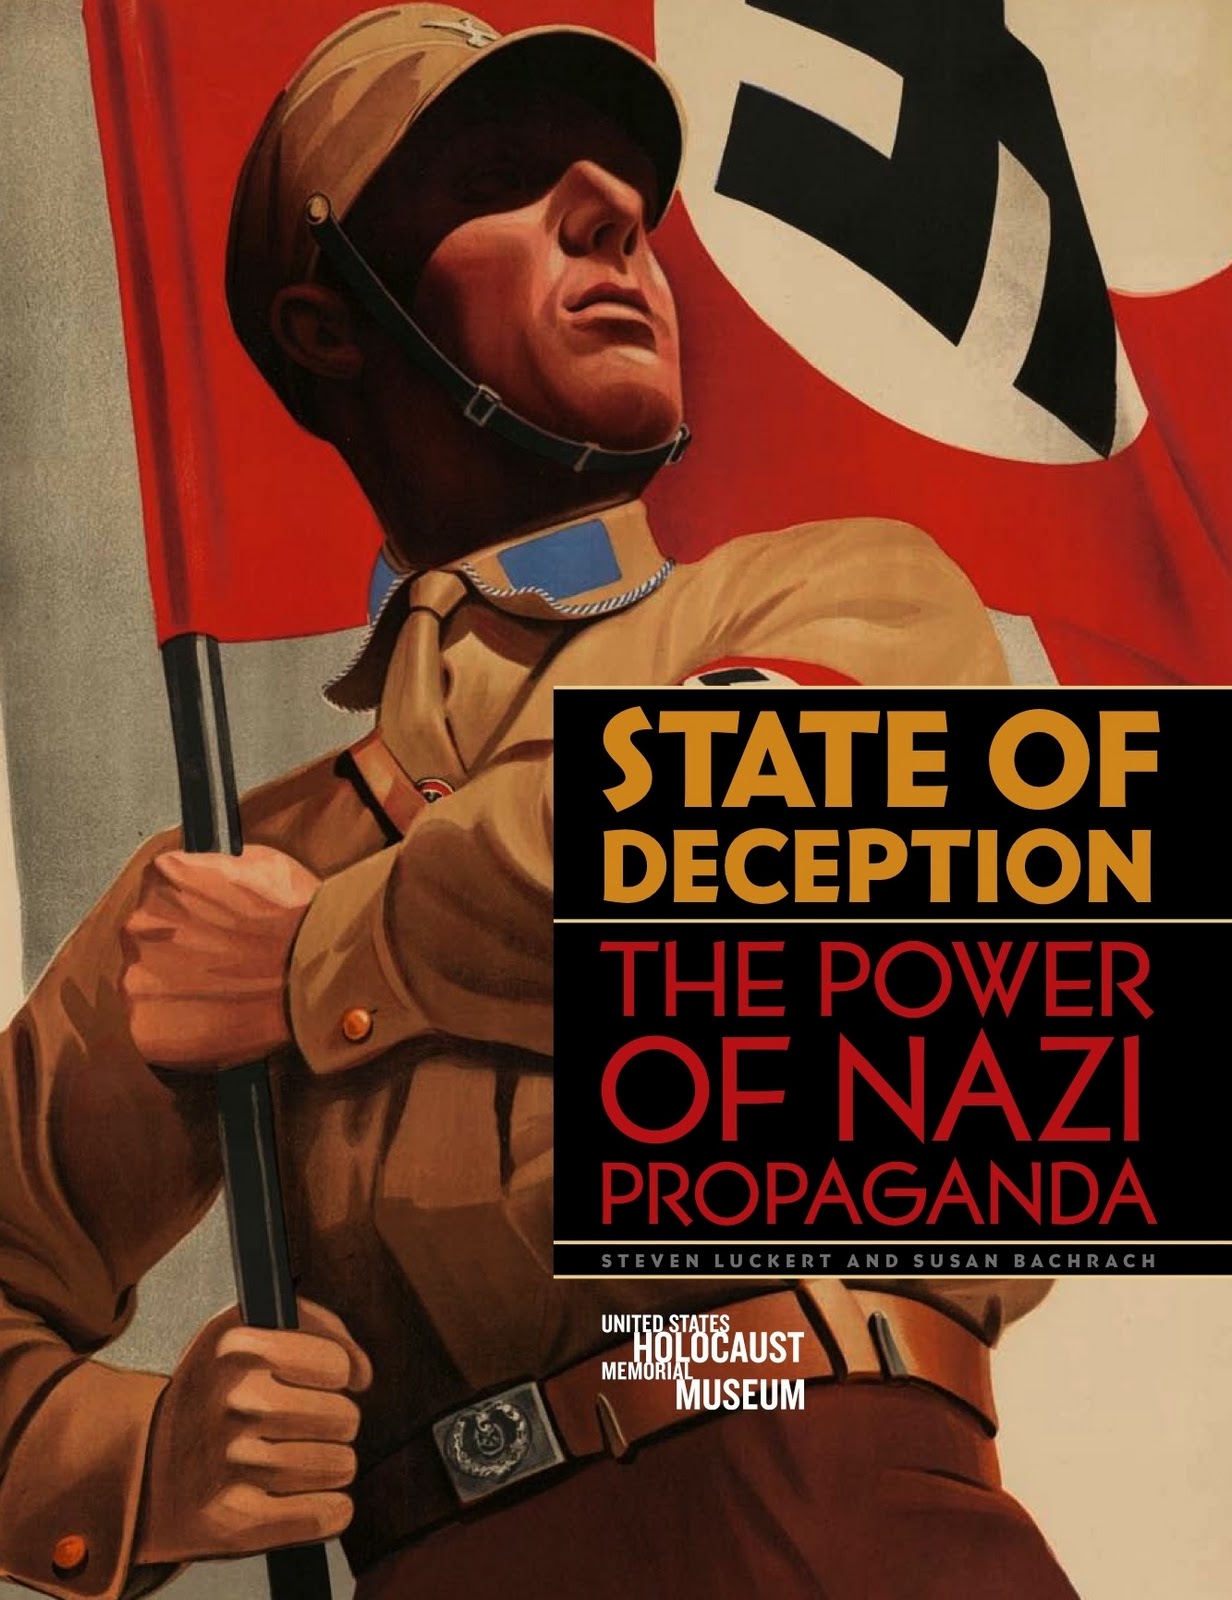 デ ザ イ ン 思 考 無 限 の 発 想 を 生 み 出 す 方 法 ソビエトとナチスのプロパガンダポスターを中心にポスターデザインの歴史をみる